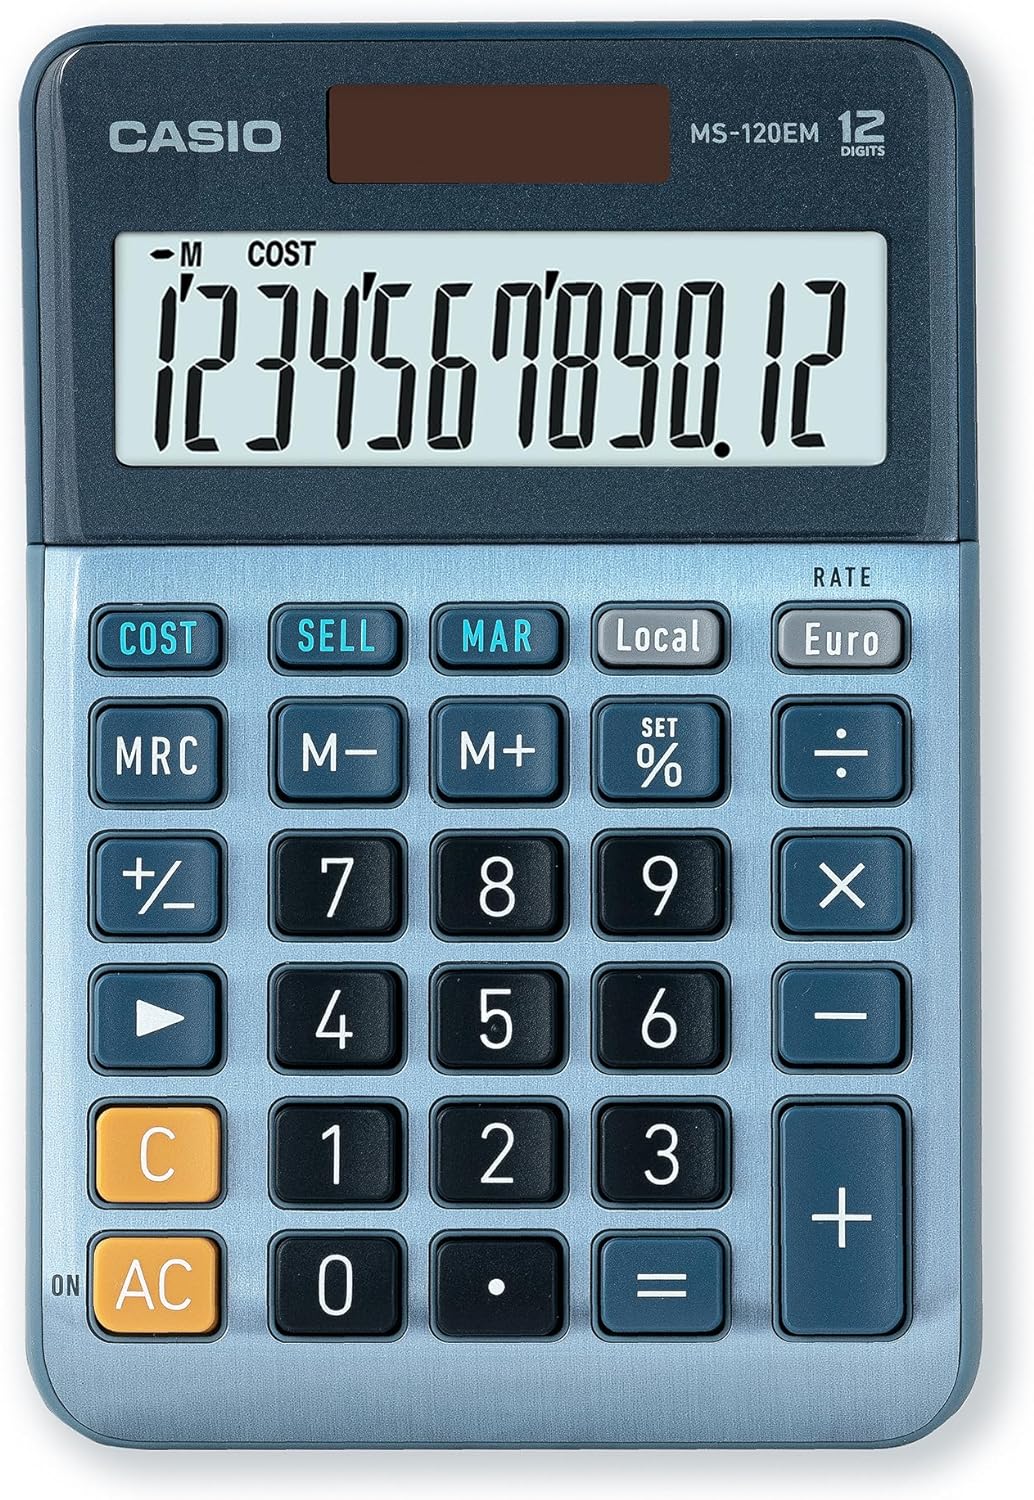 Casio MS-120EM Petite calculatrice de bureau - Écran LCD à 12 chiffres - Alimenté par énergie solaire et batterie - Couleur bleue